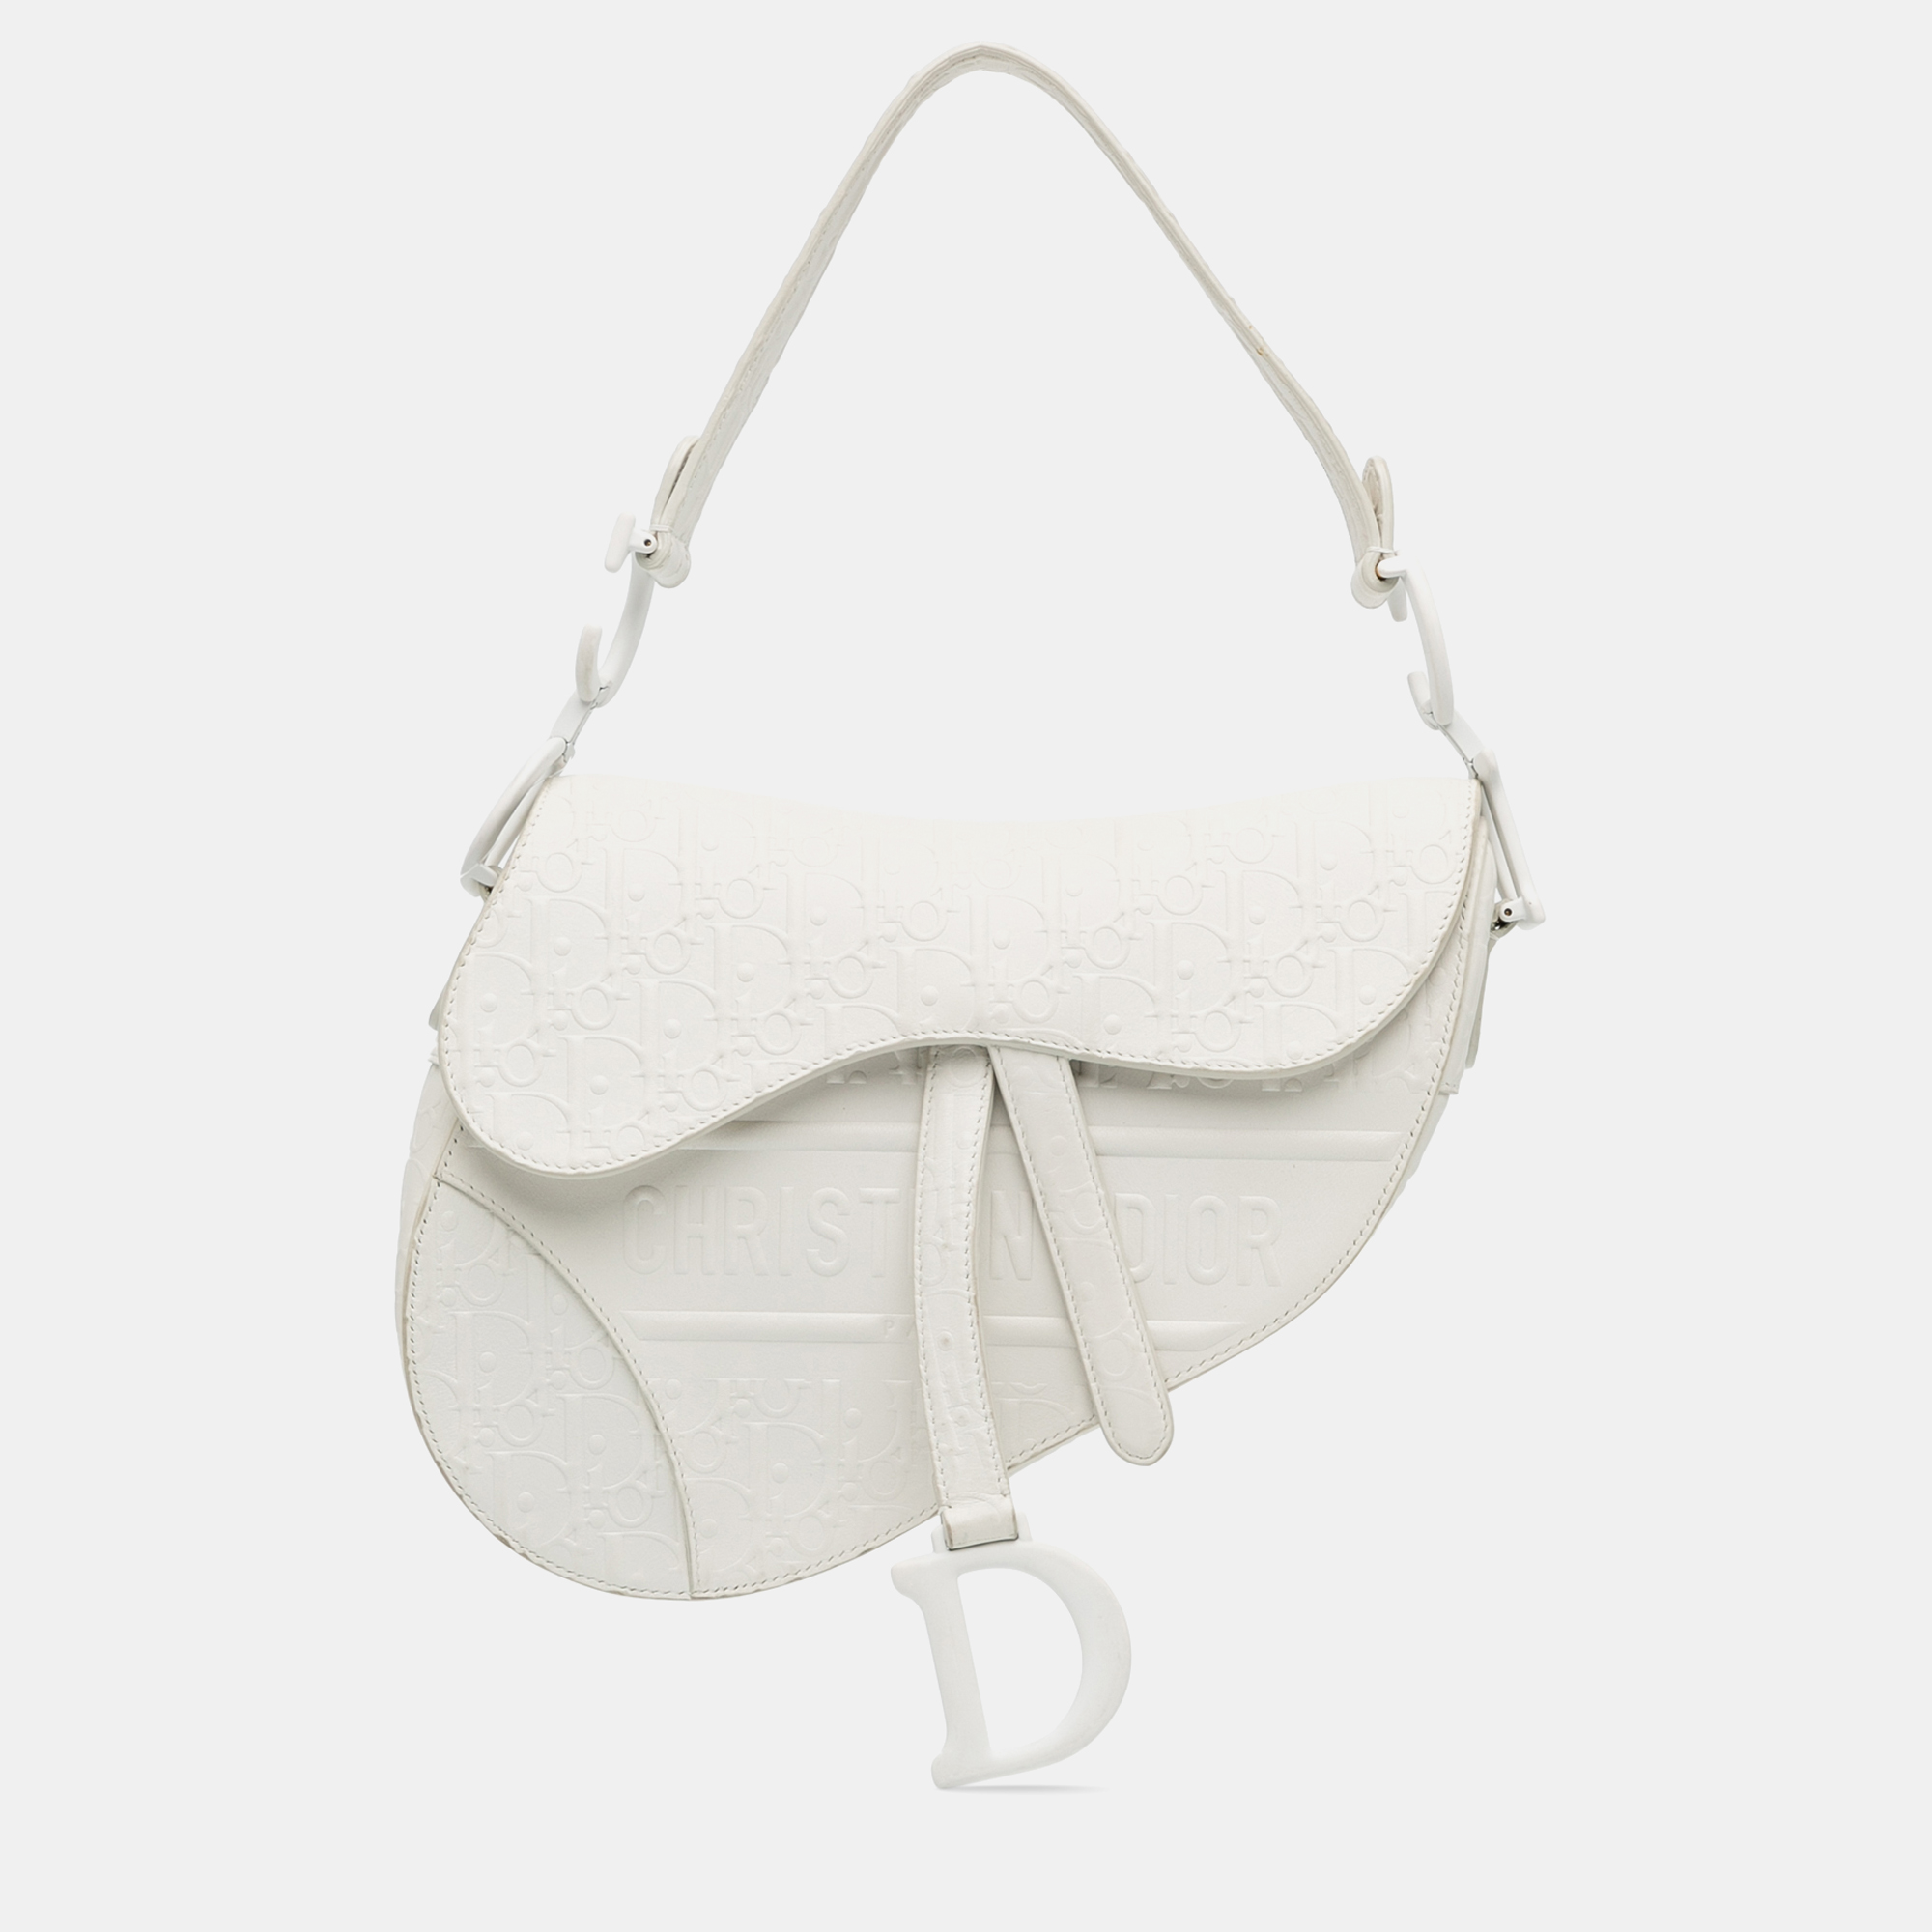 Dior embossed leather oblique saddle bag